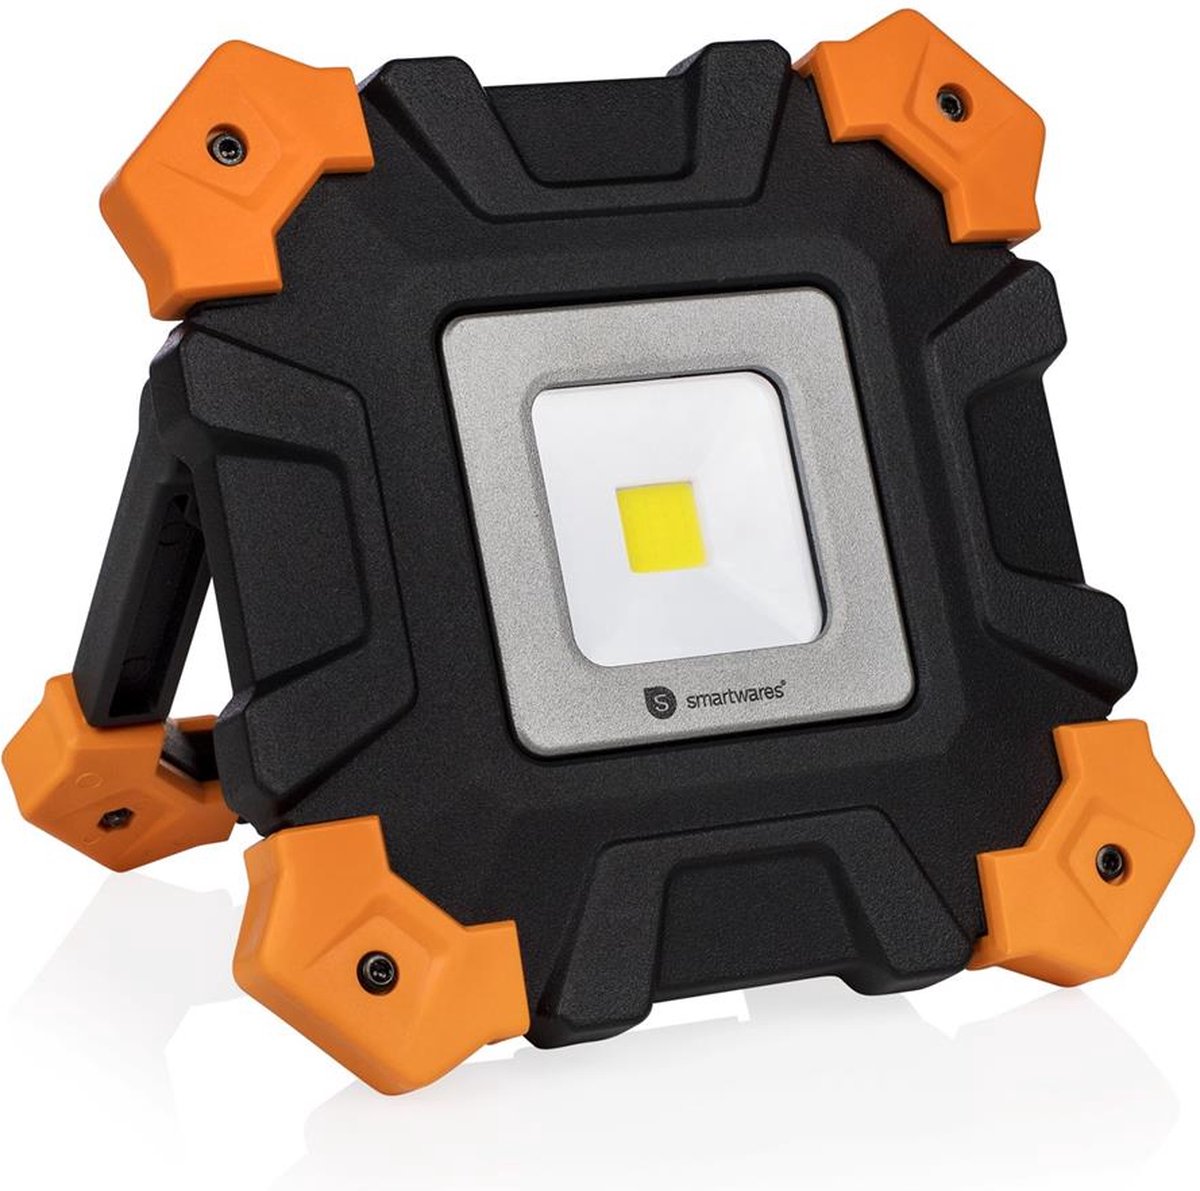 Smartwares Bouwlamp FCL-80117FR - Oplaadbare werkverlichting - Dimbaar Led licht - Geschikt voor binnen en buiten